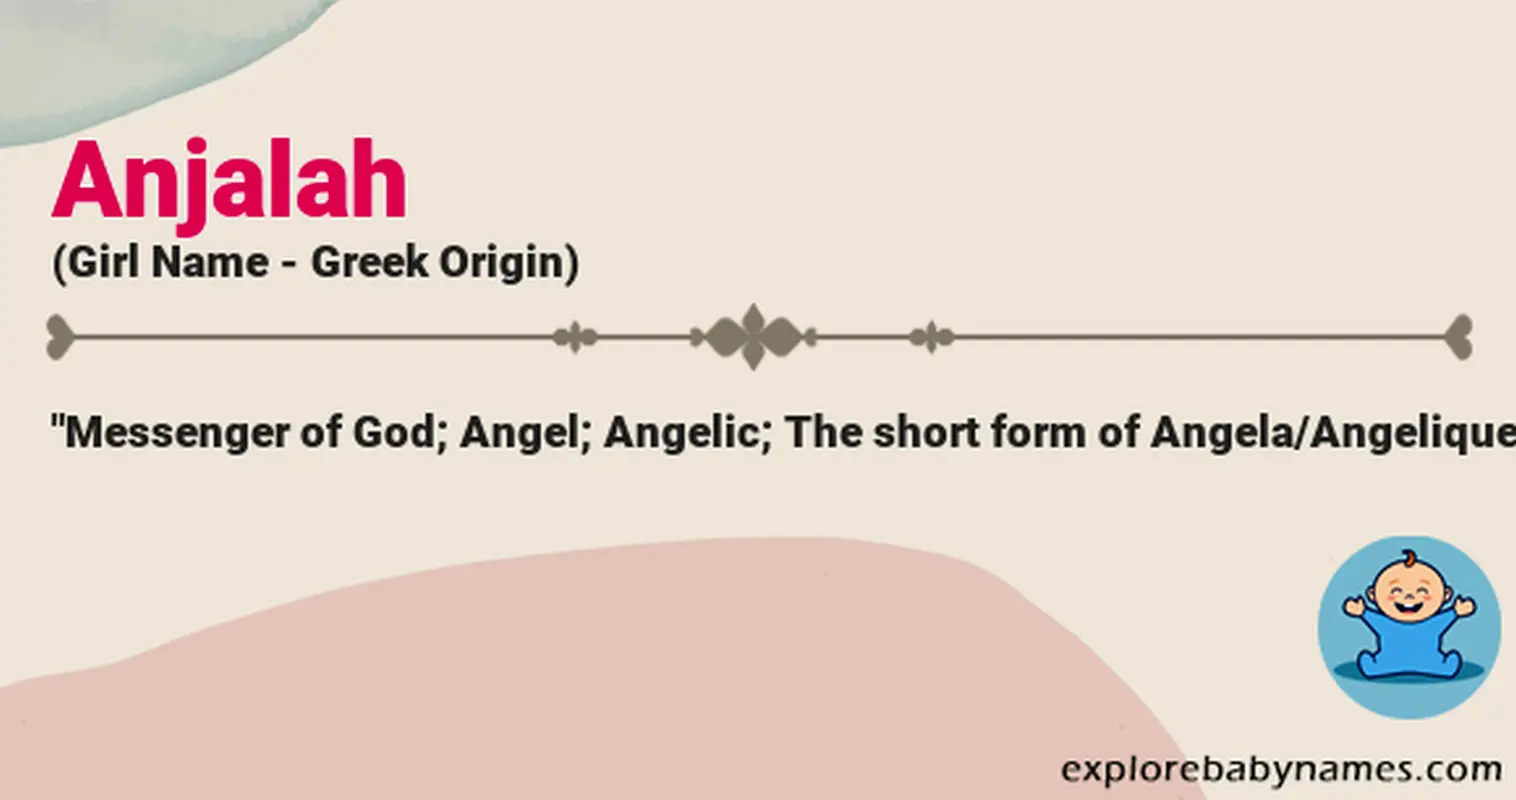 Meaning of Anjalah